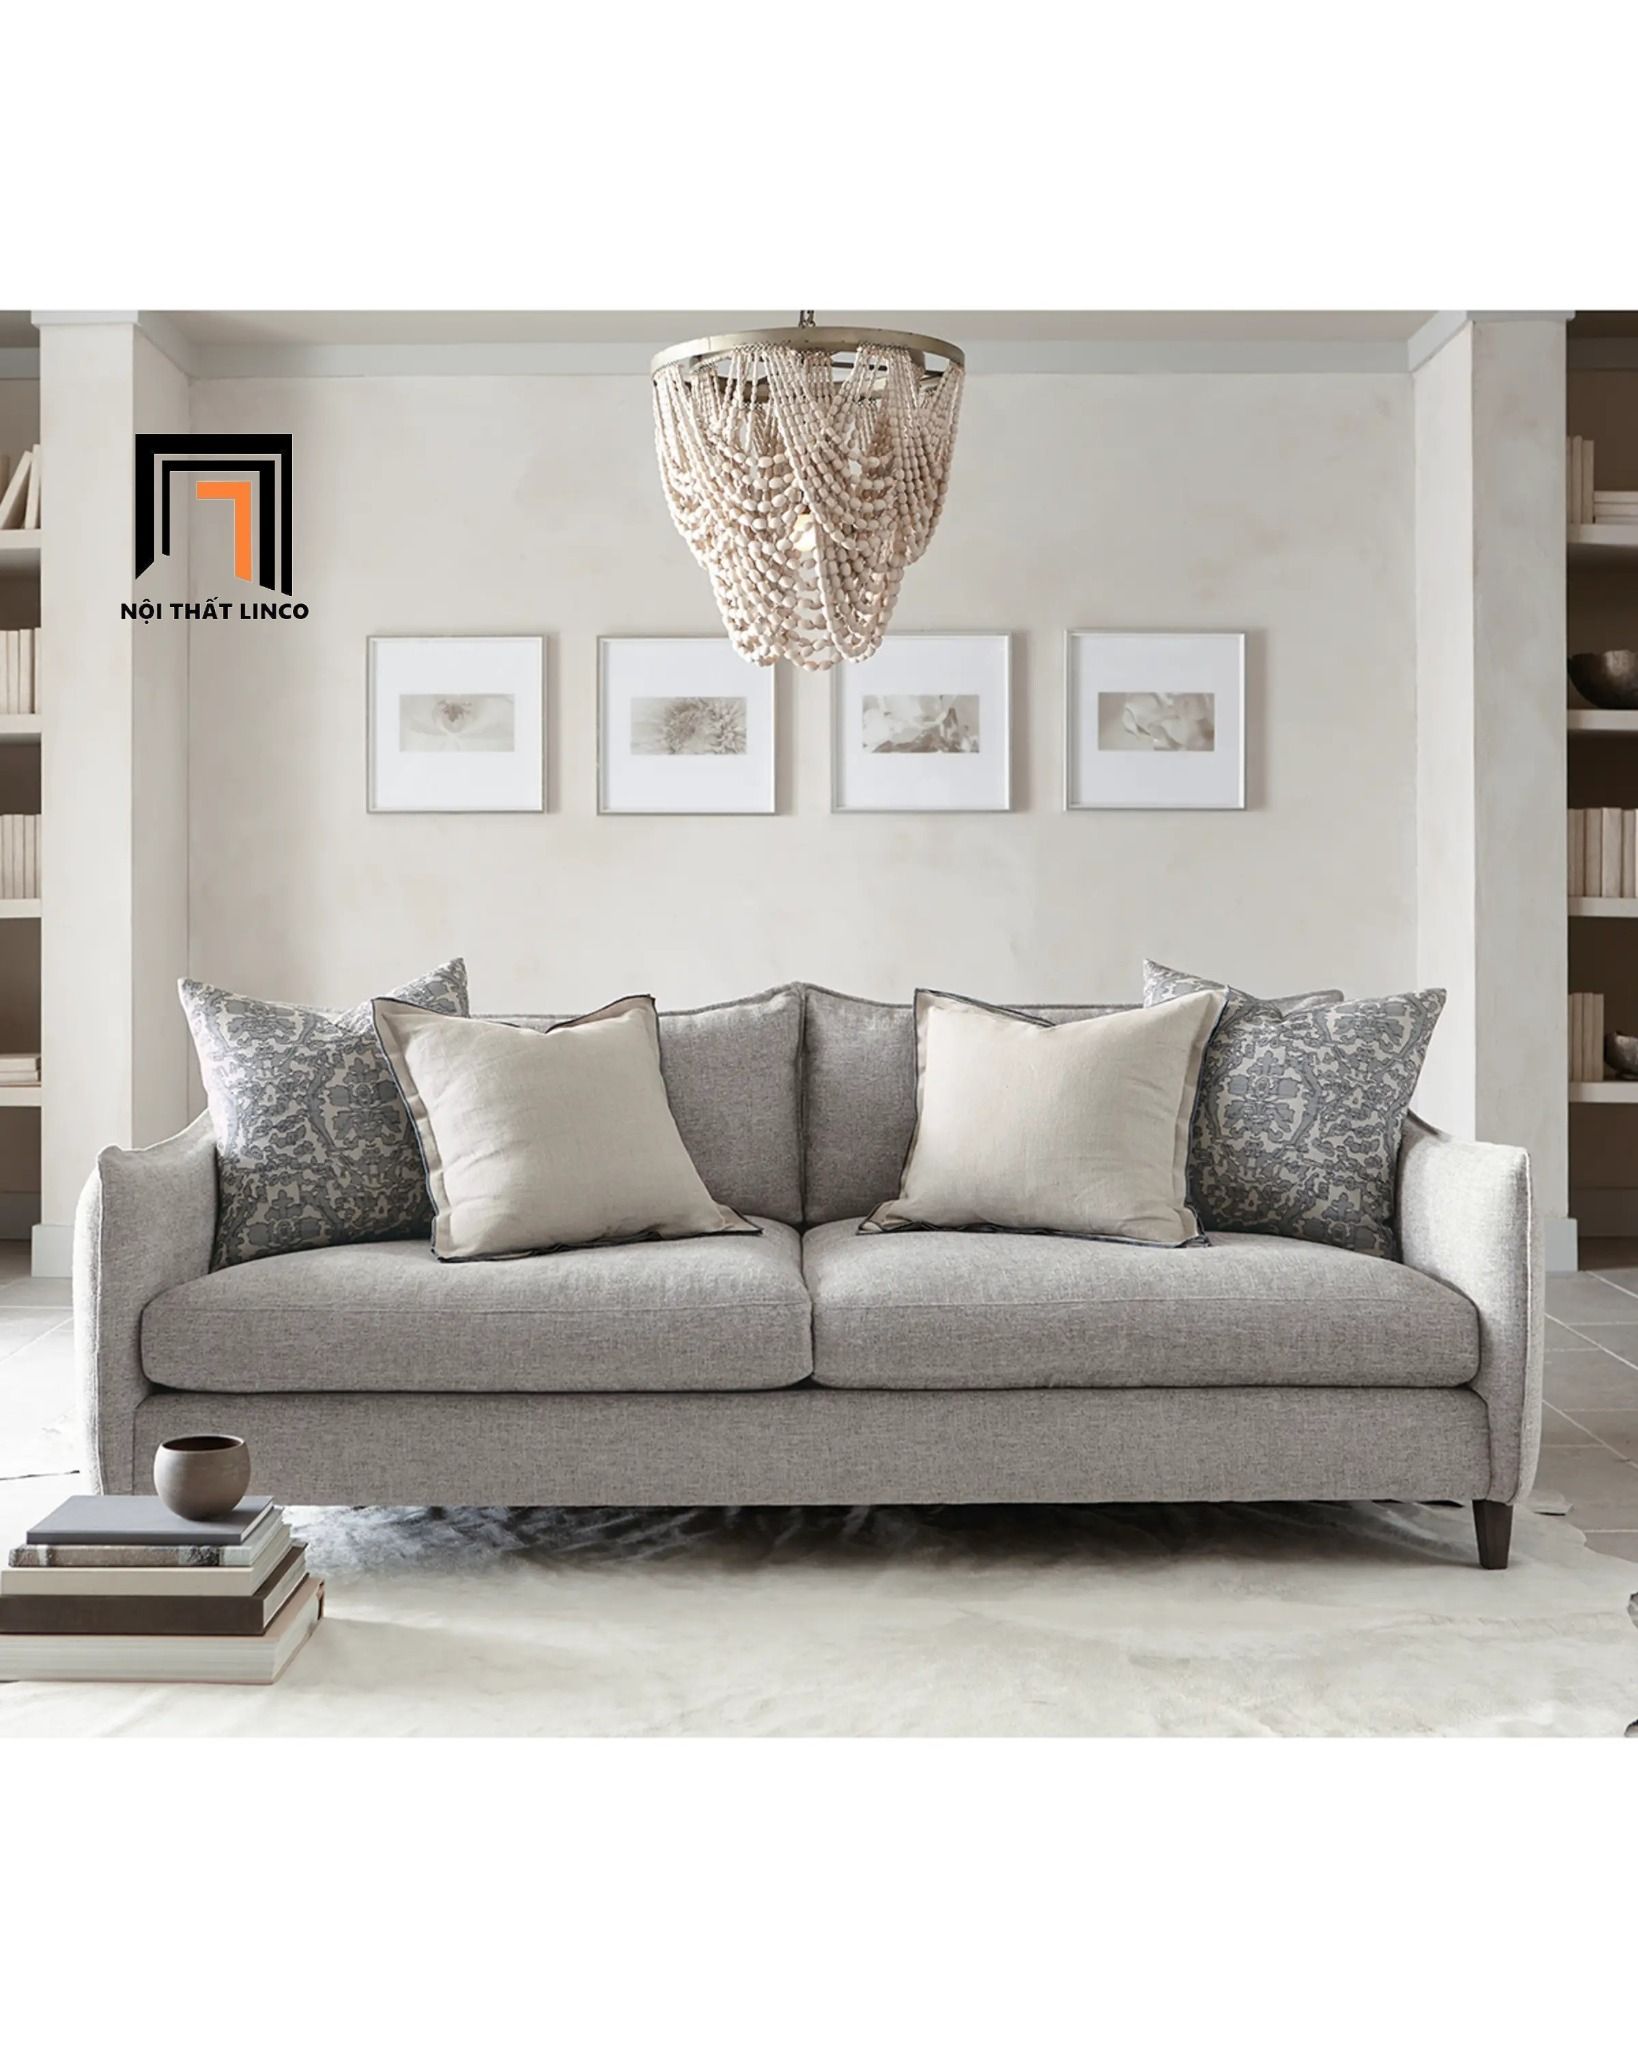  Ghế sofa văng vải nỉ đẹp BT114 Bernhat dài 2m xám trắng 